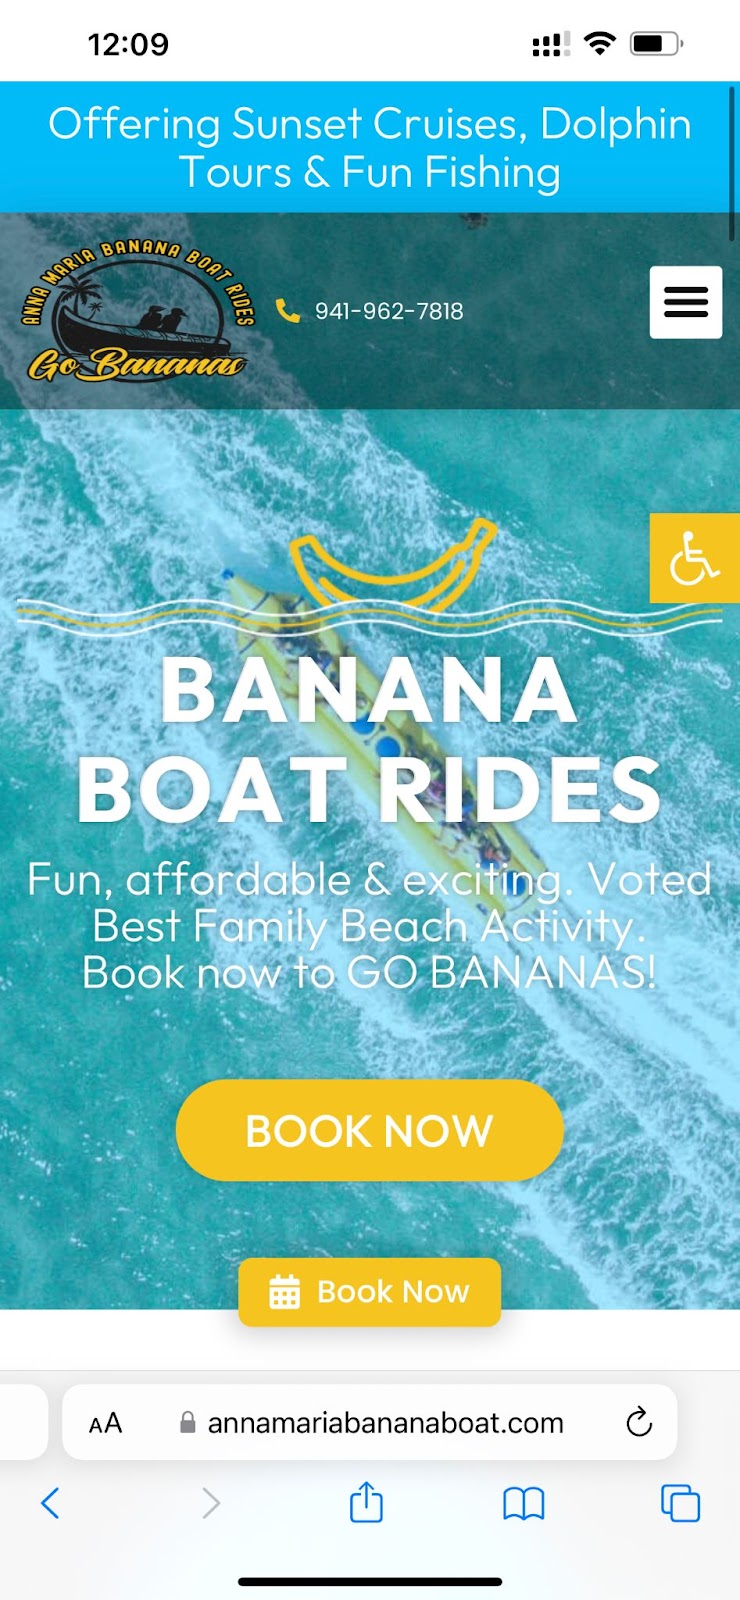 Banana Boat rides example page